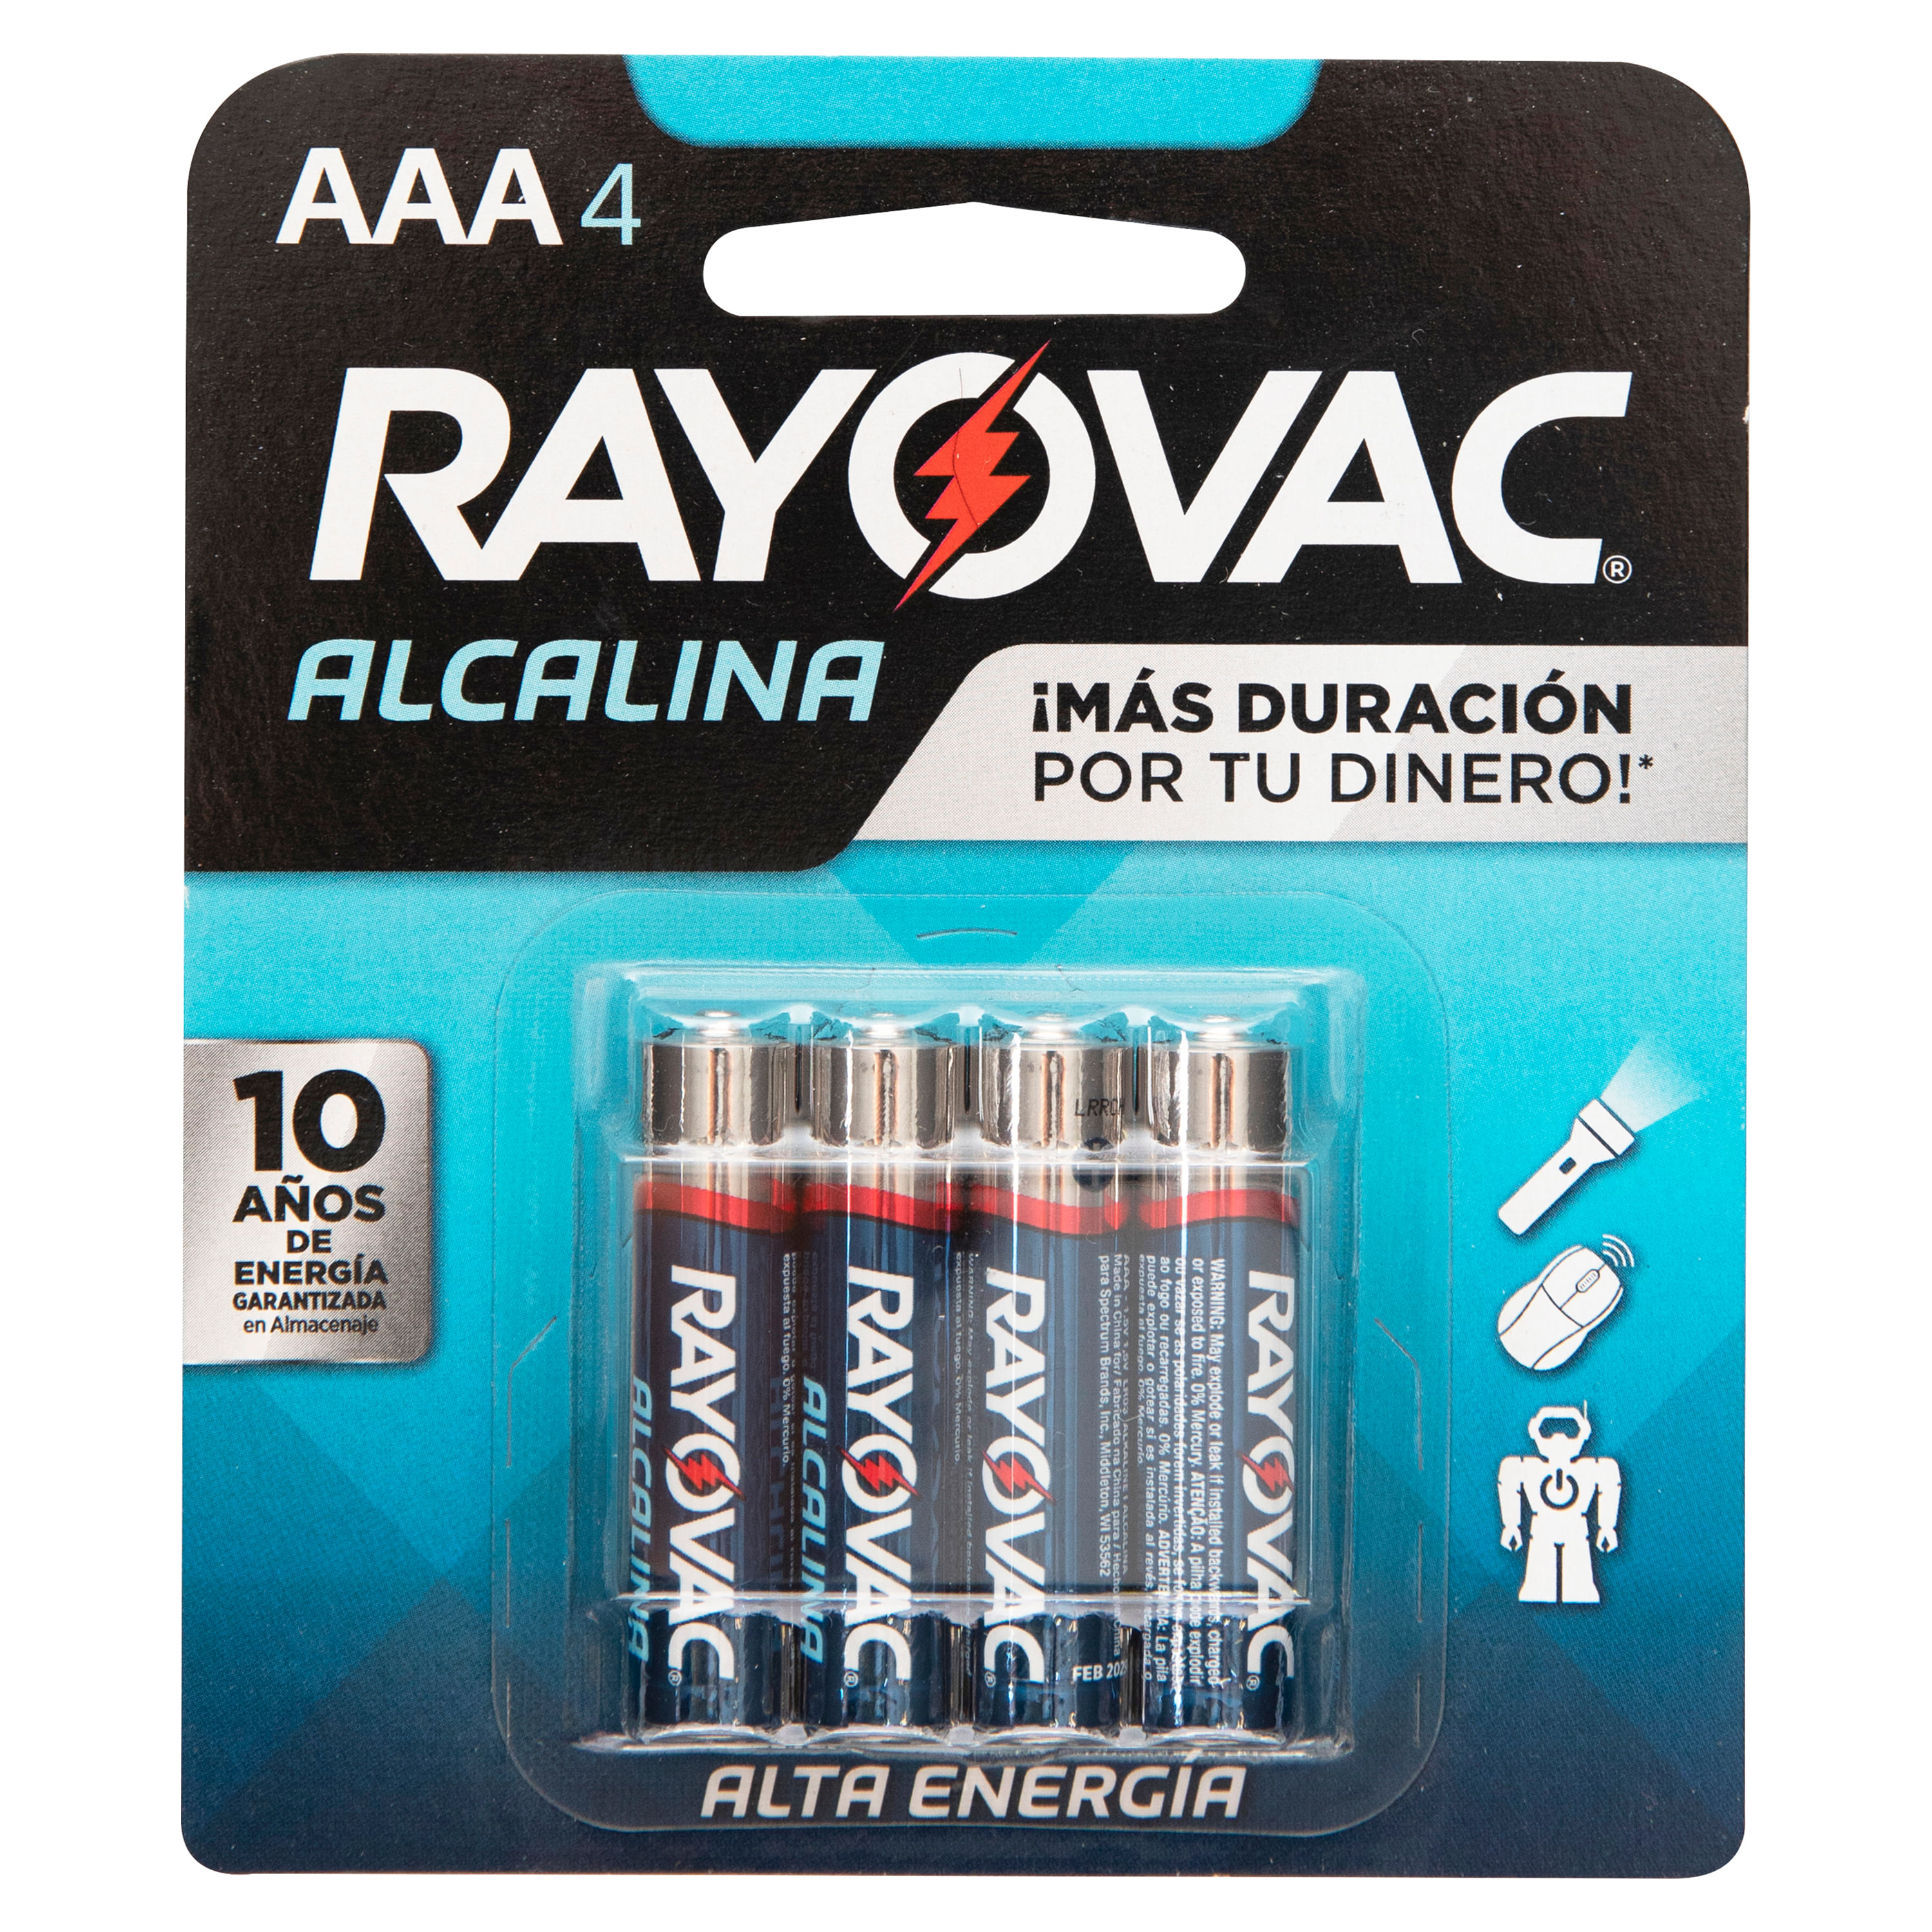 Comprar Batería Duracell Alcalina AA Basico - 4unidades